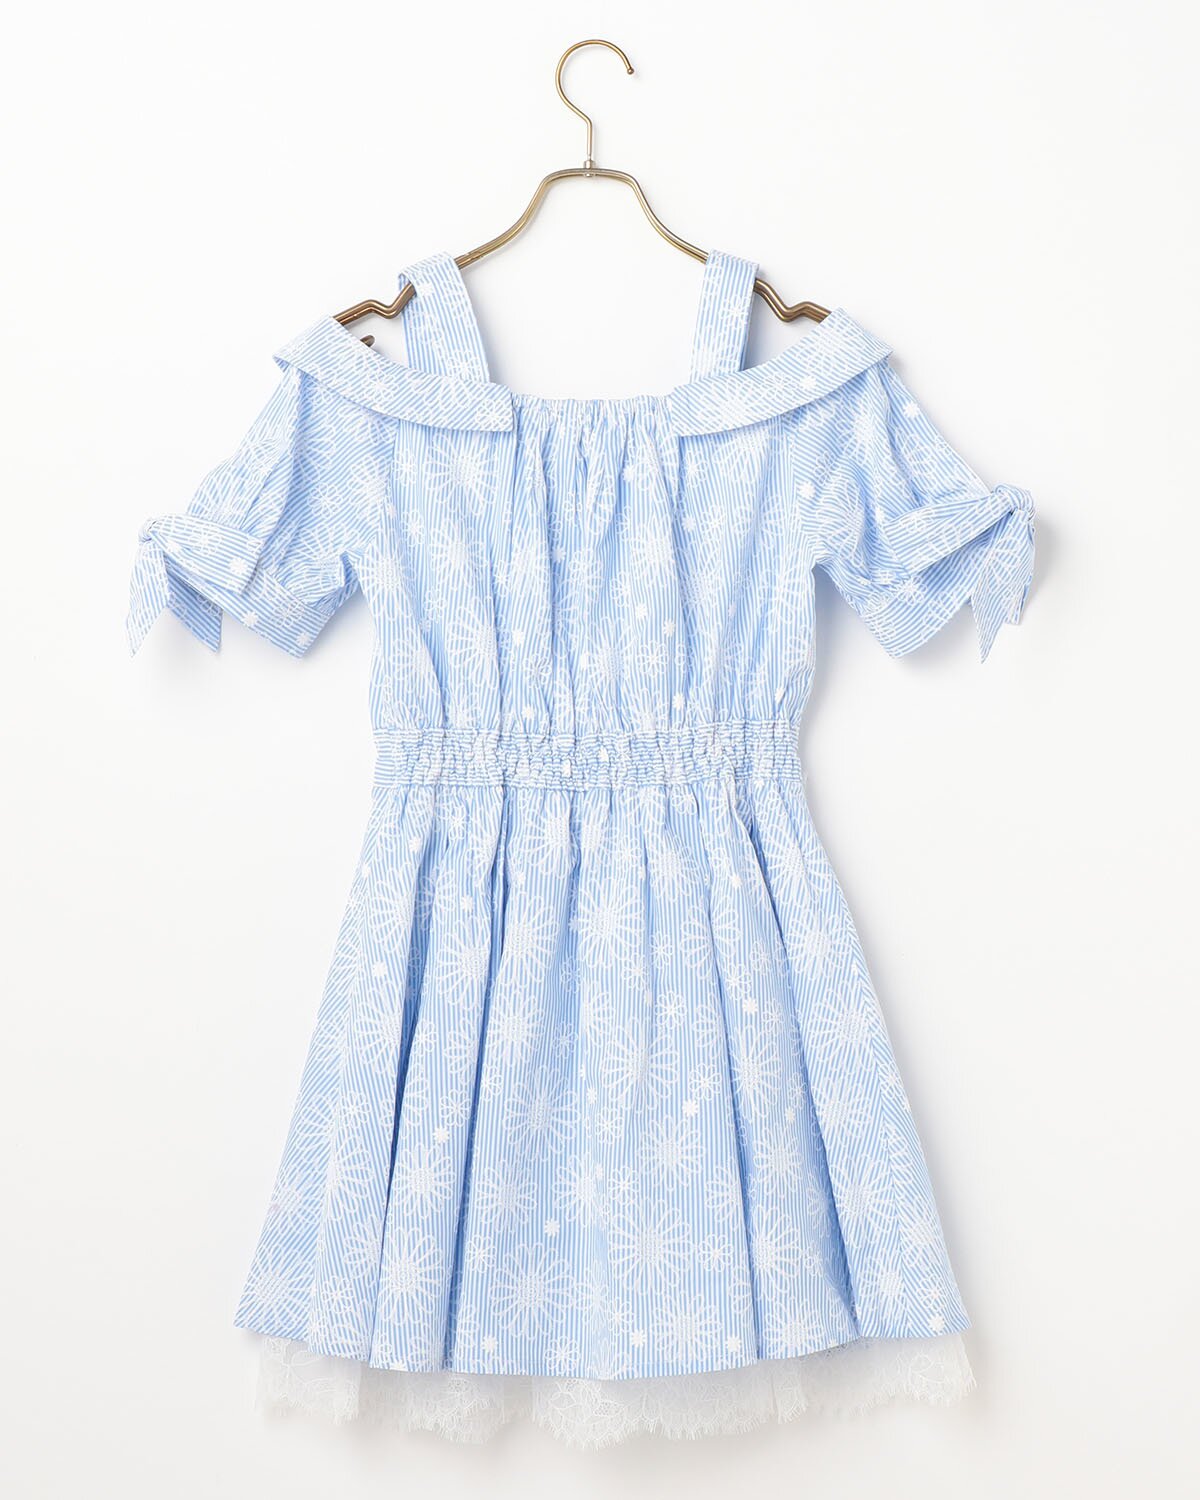 LIZ LISA Embroidered Print Dress: LIZ LISA - Tokyo Otaku Mode (TOM)